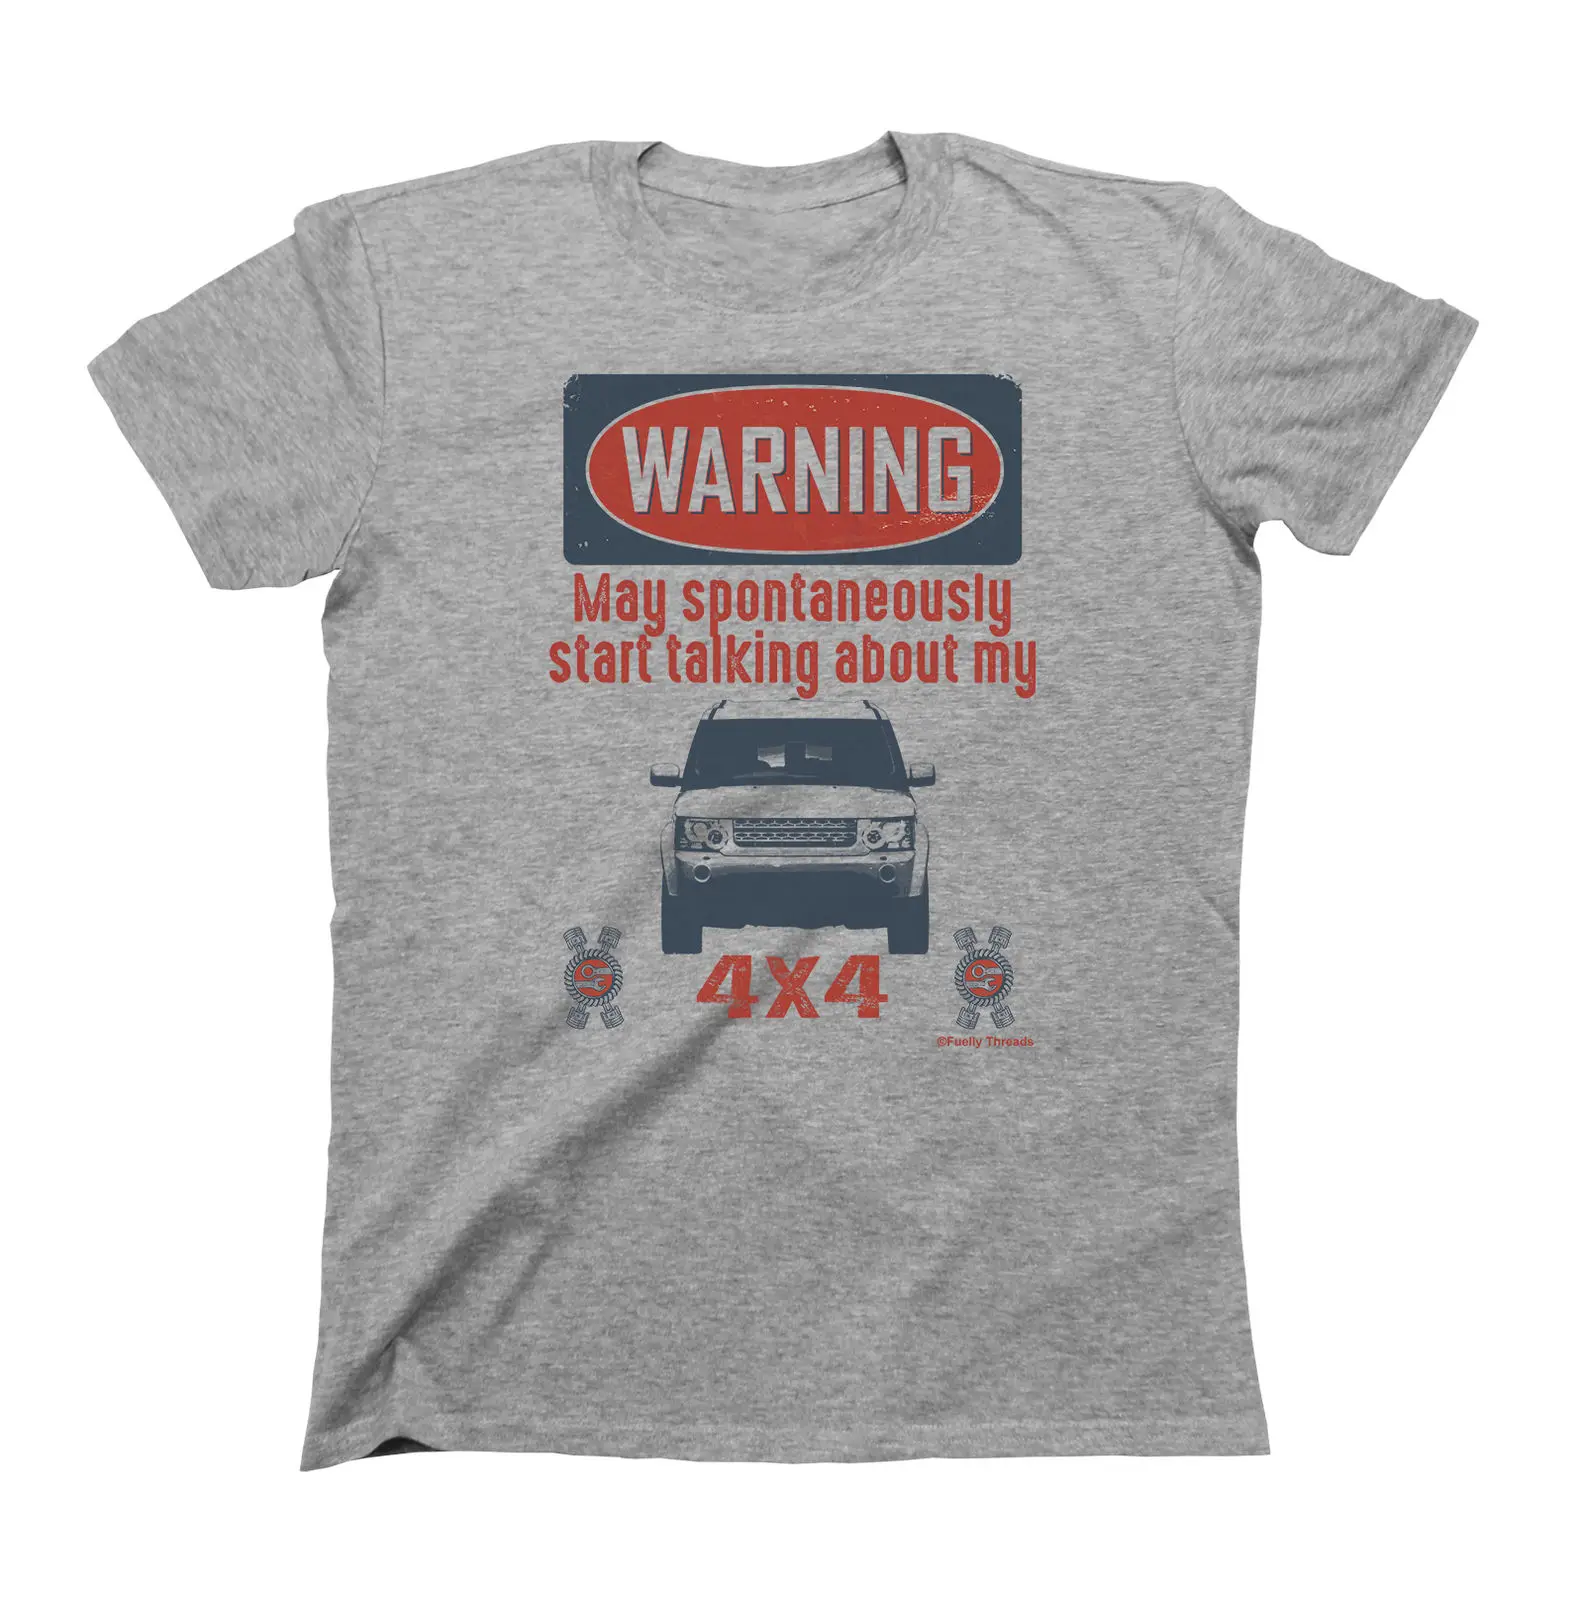 Camiseta de moda de coche para hombre, camiseta de advertencia de Mayo de hablar esponjosamente sobre 4x4, camiseta de Discovery para fanáticos del coche británico, 2019